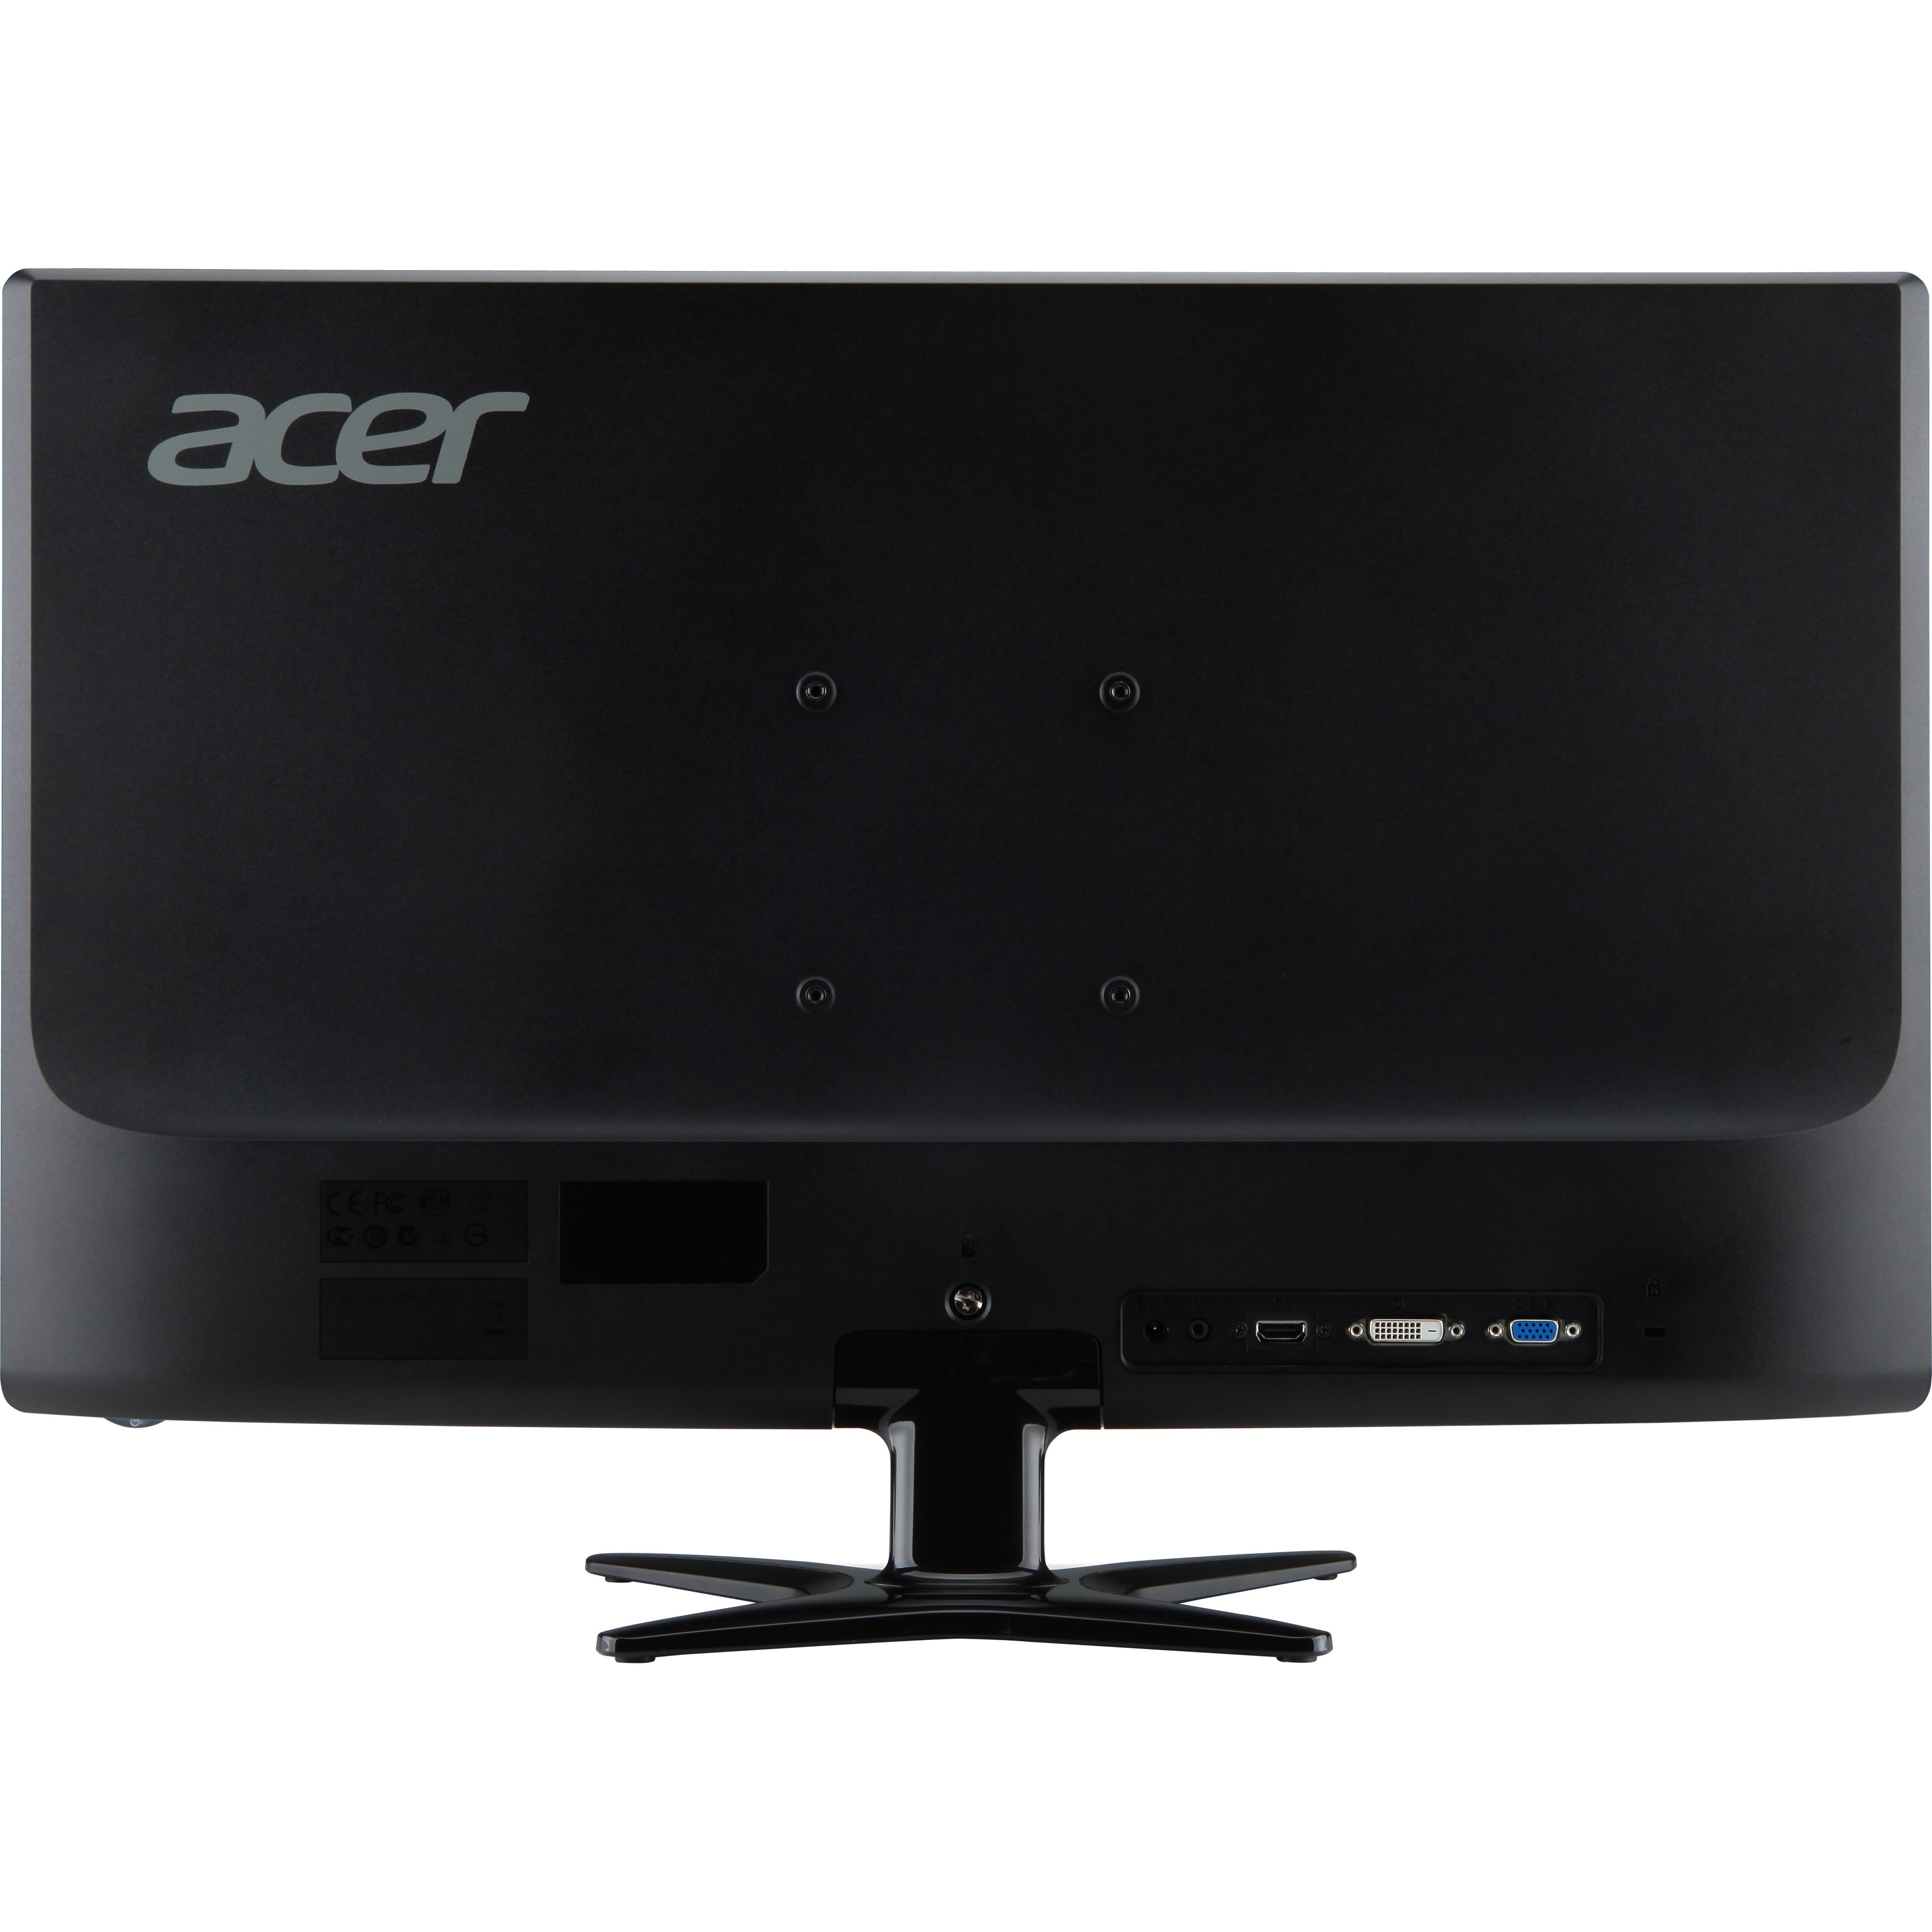 Acer G276HL 27" Full HD LED LCD Monitor, 16:9, - Walmart.com